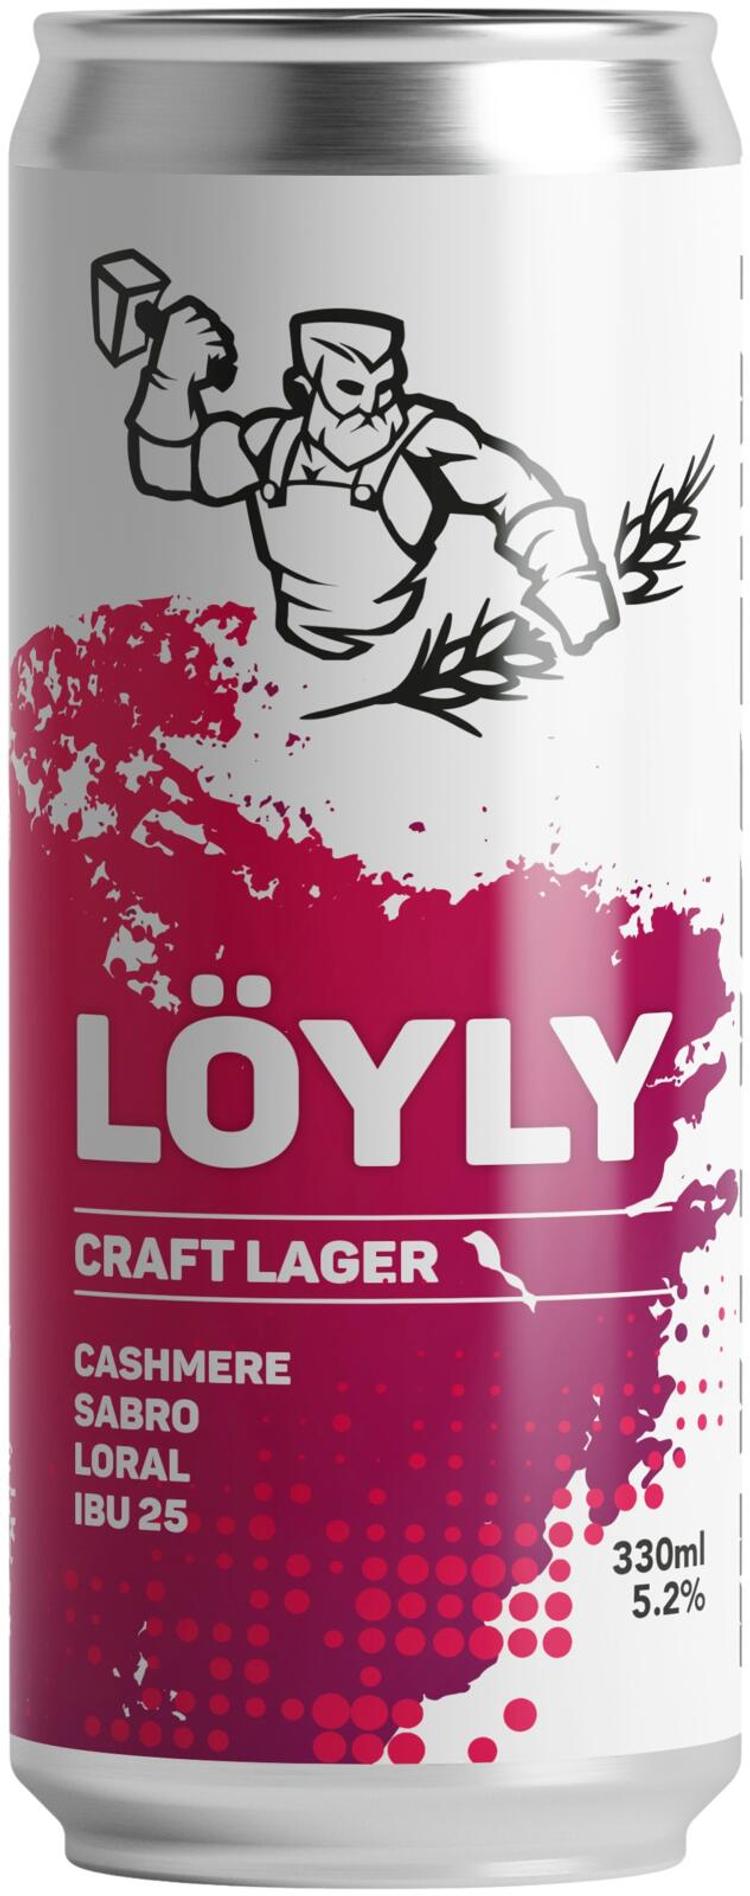 Mallassepät - Löyly - Craft Lager 5,2%